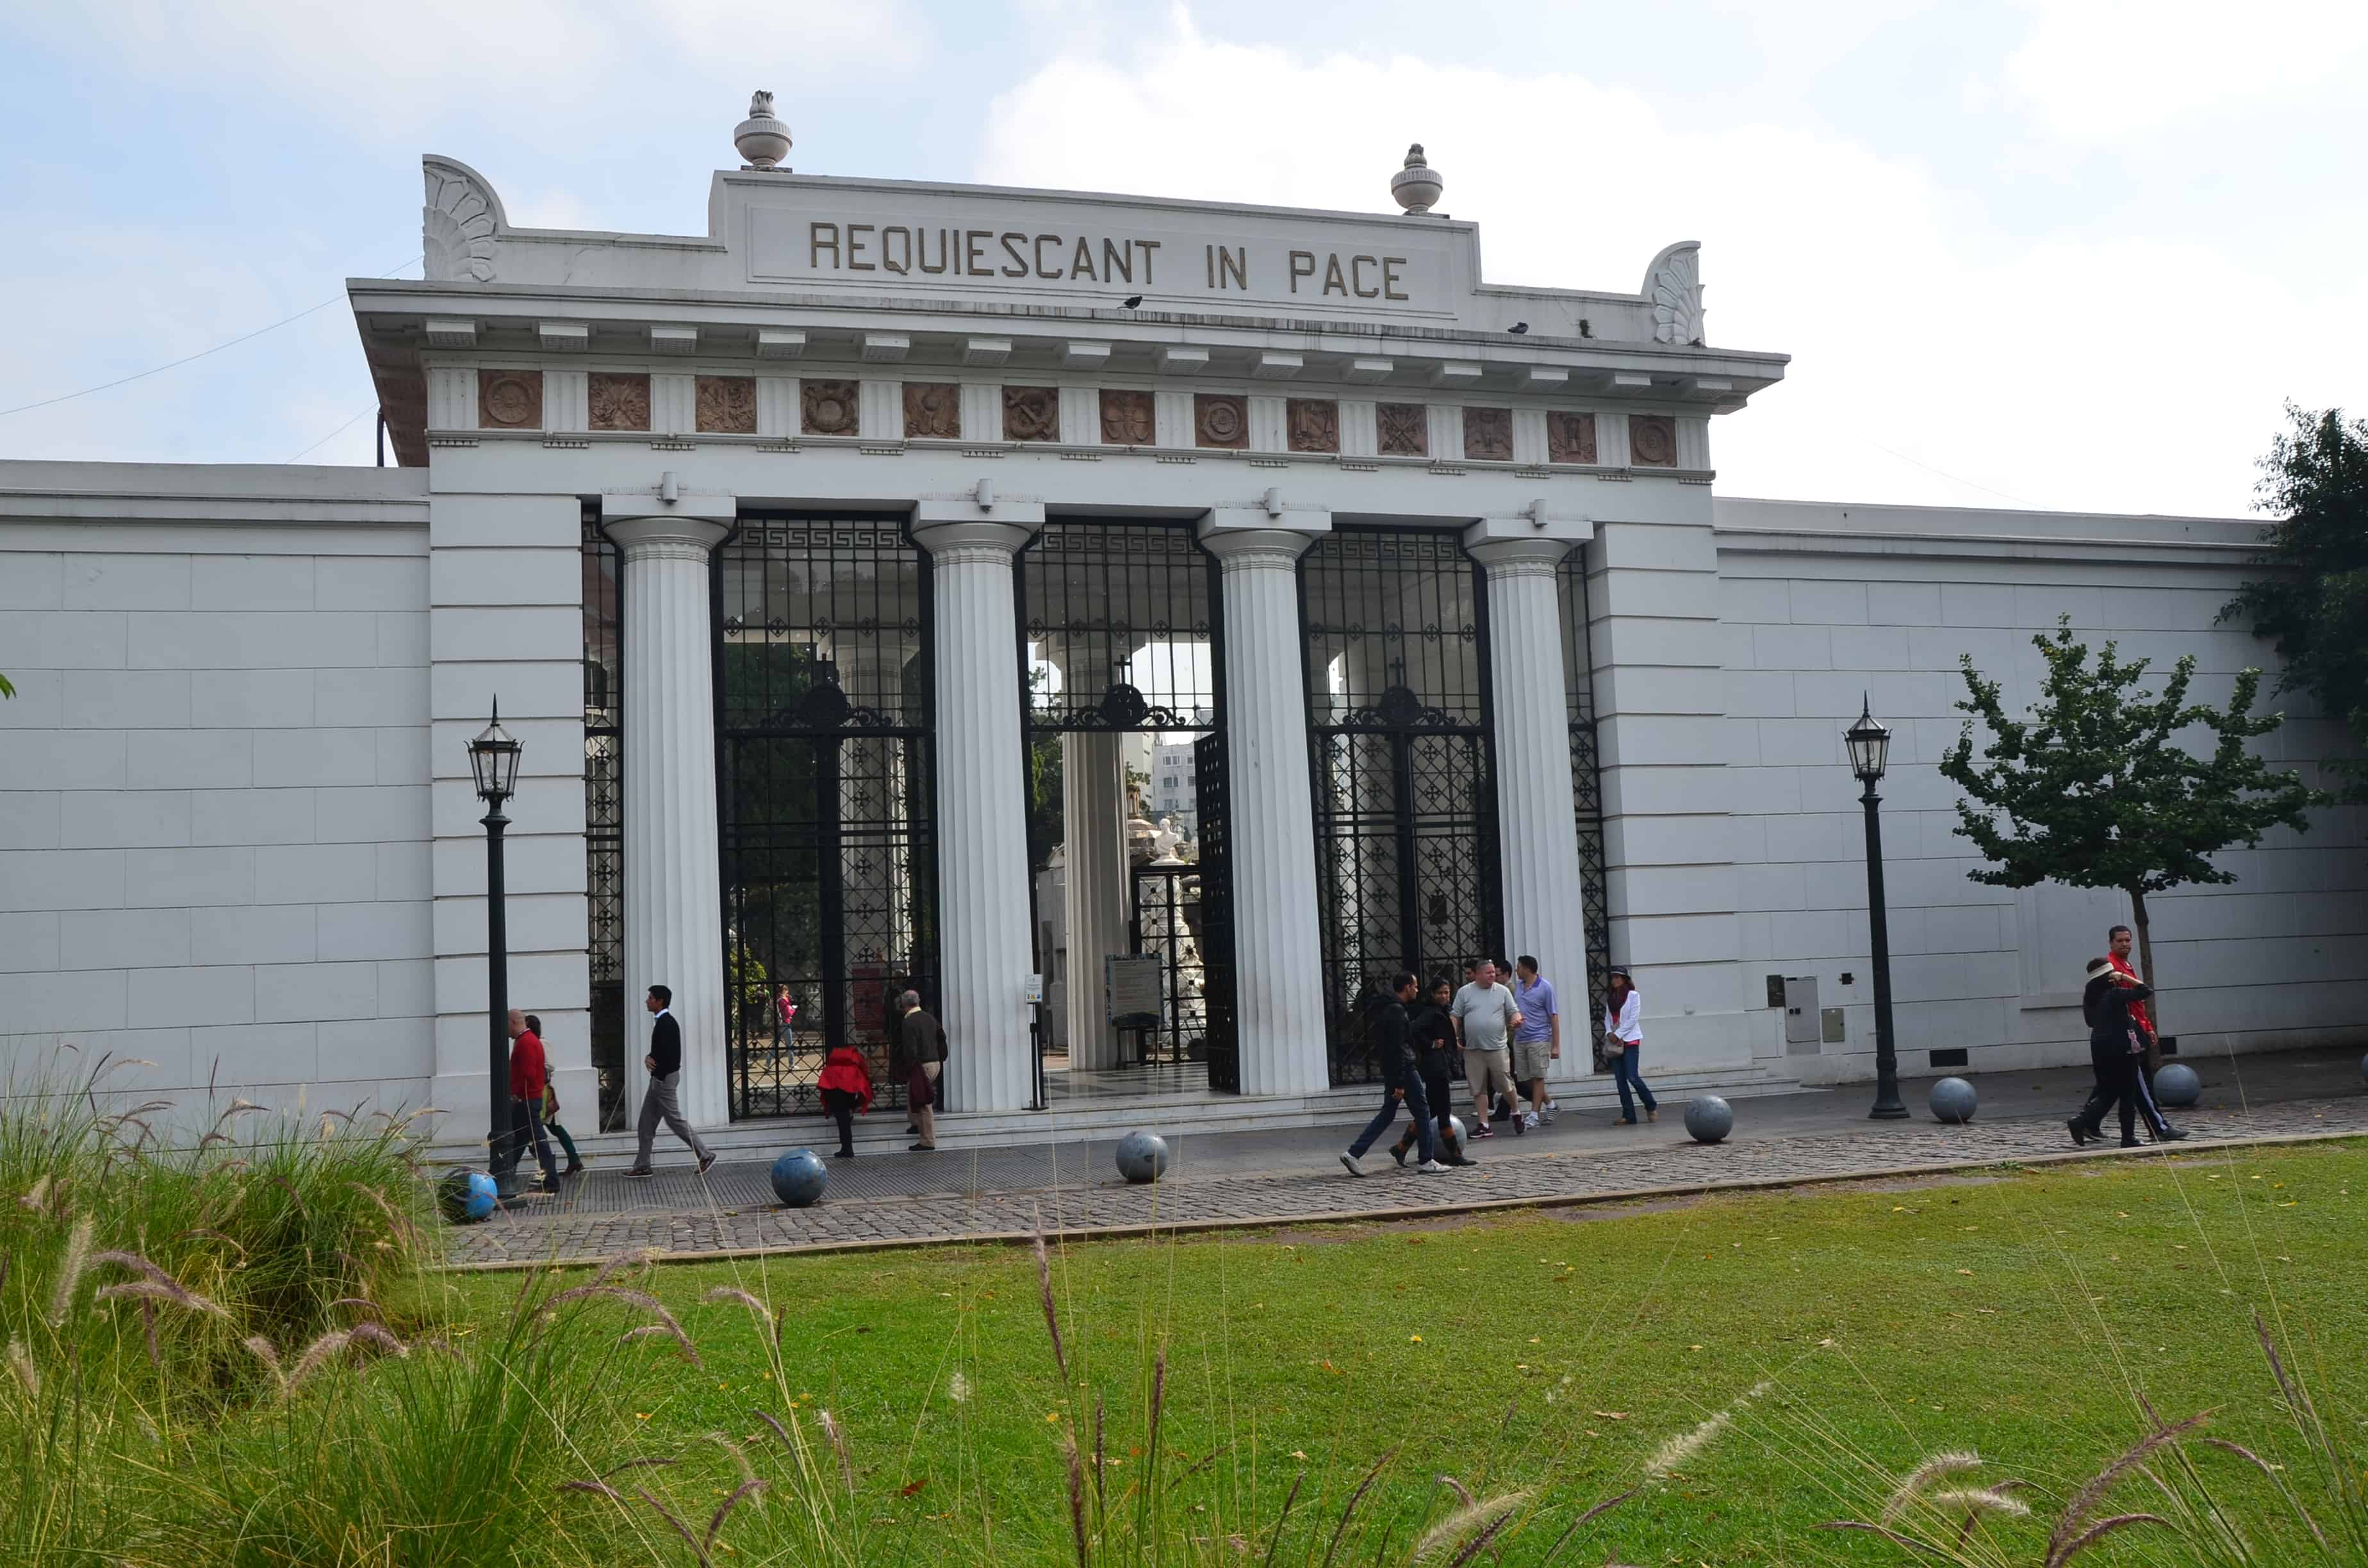 Entrance to Cementerio de la Recoleta in Buenos Aires, Argentina